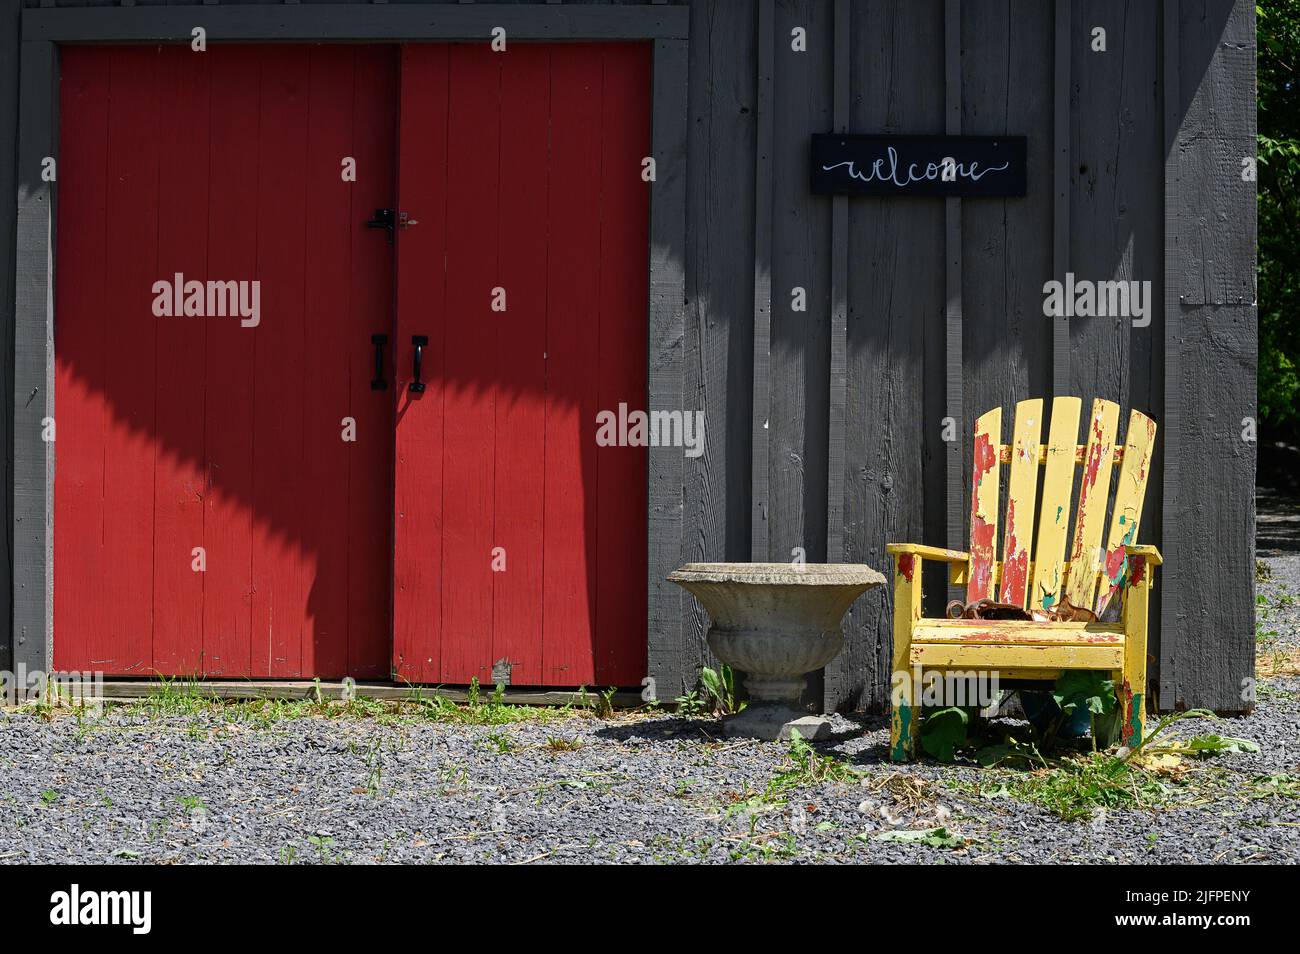 ambiance paisible de chaise jaune adirondack à côté de portes coulissantes rouges dans un mur en bois non peint Banque D'Images